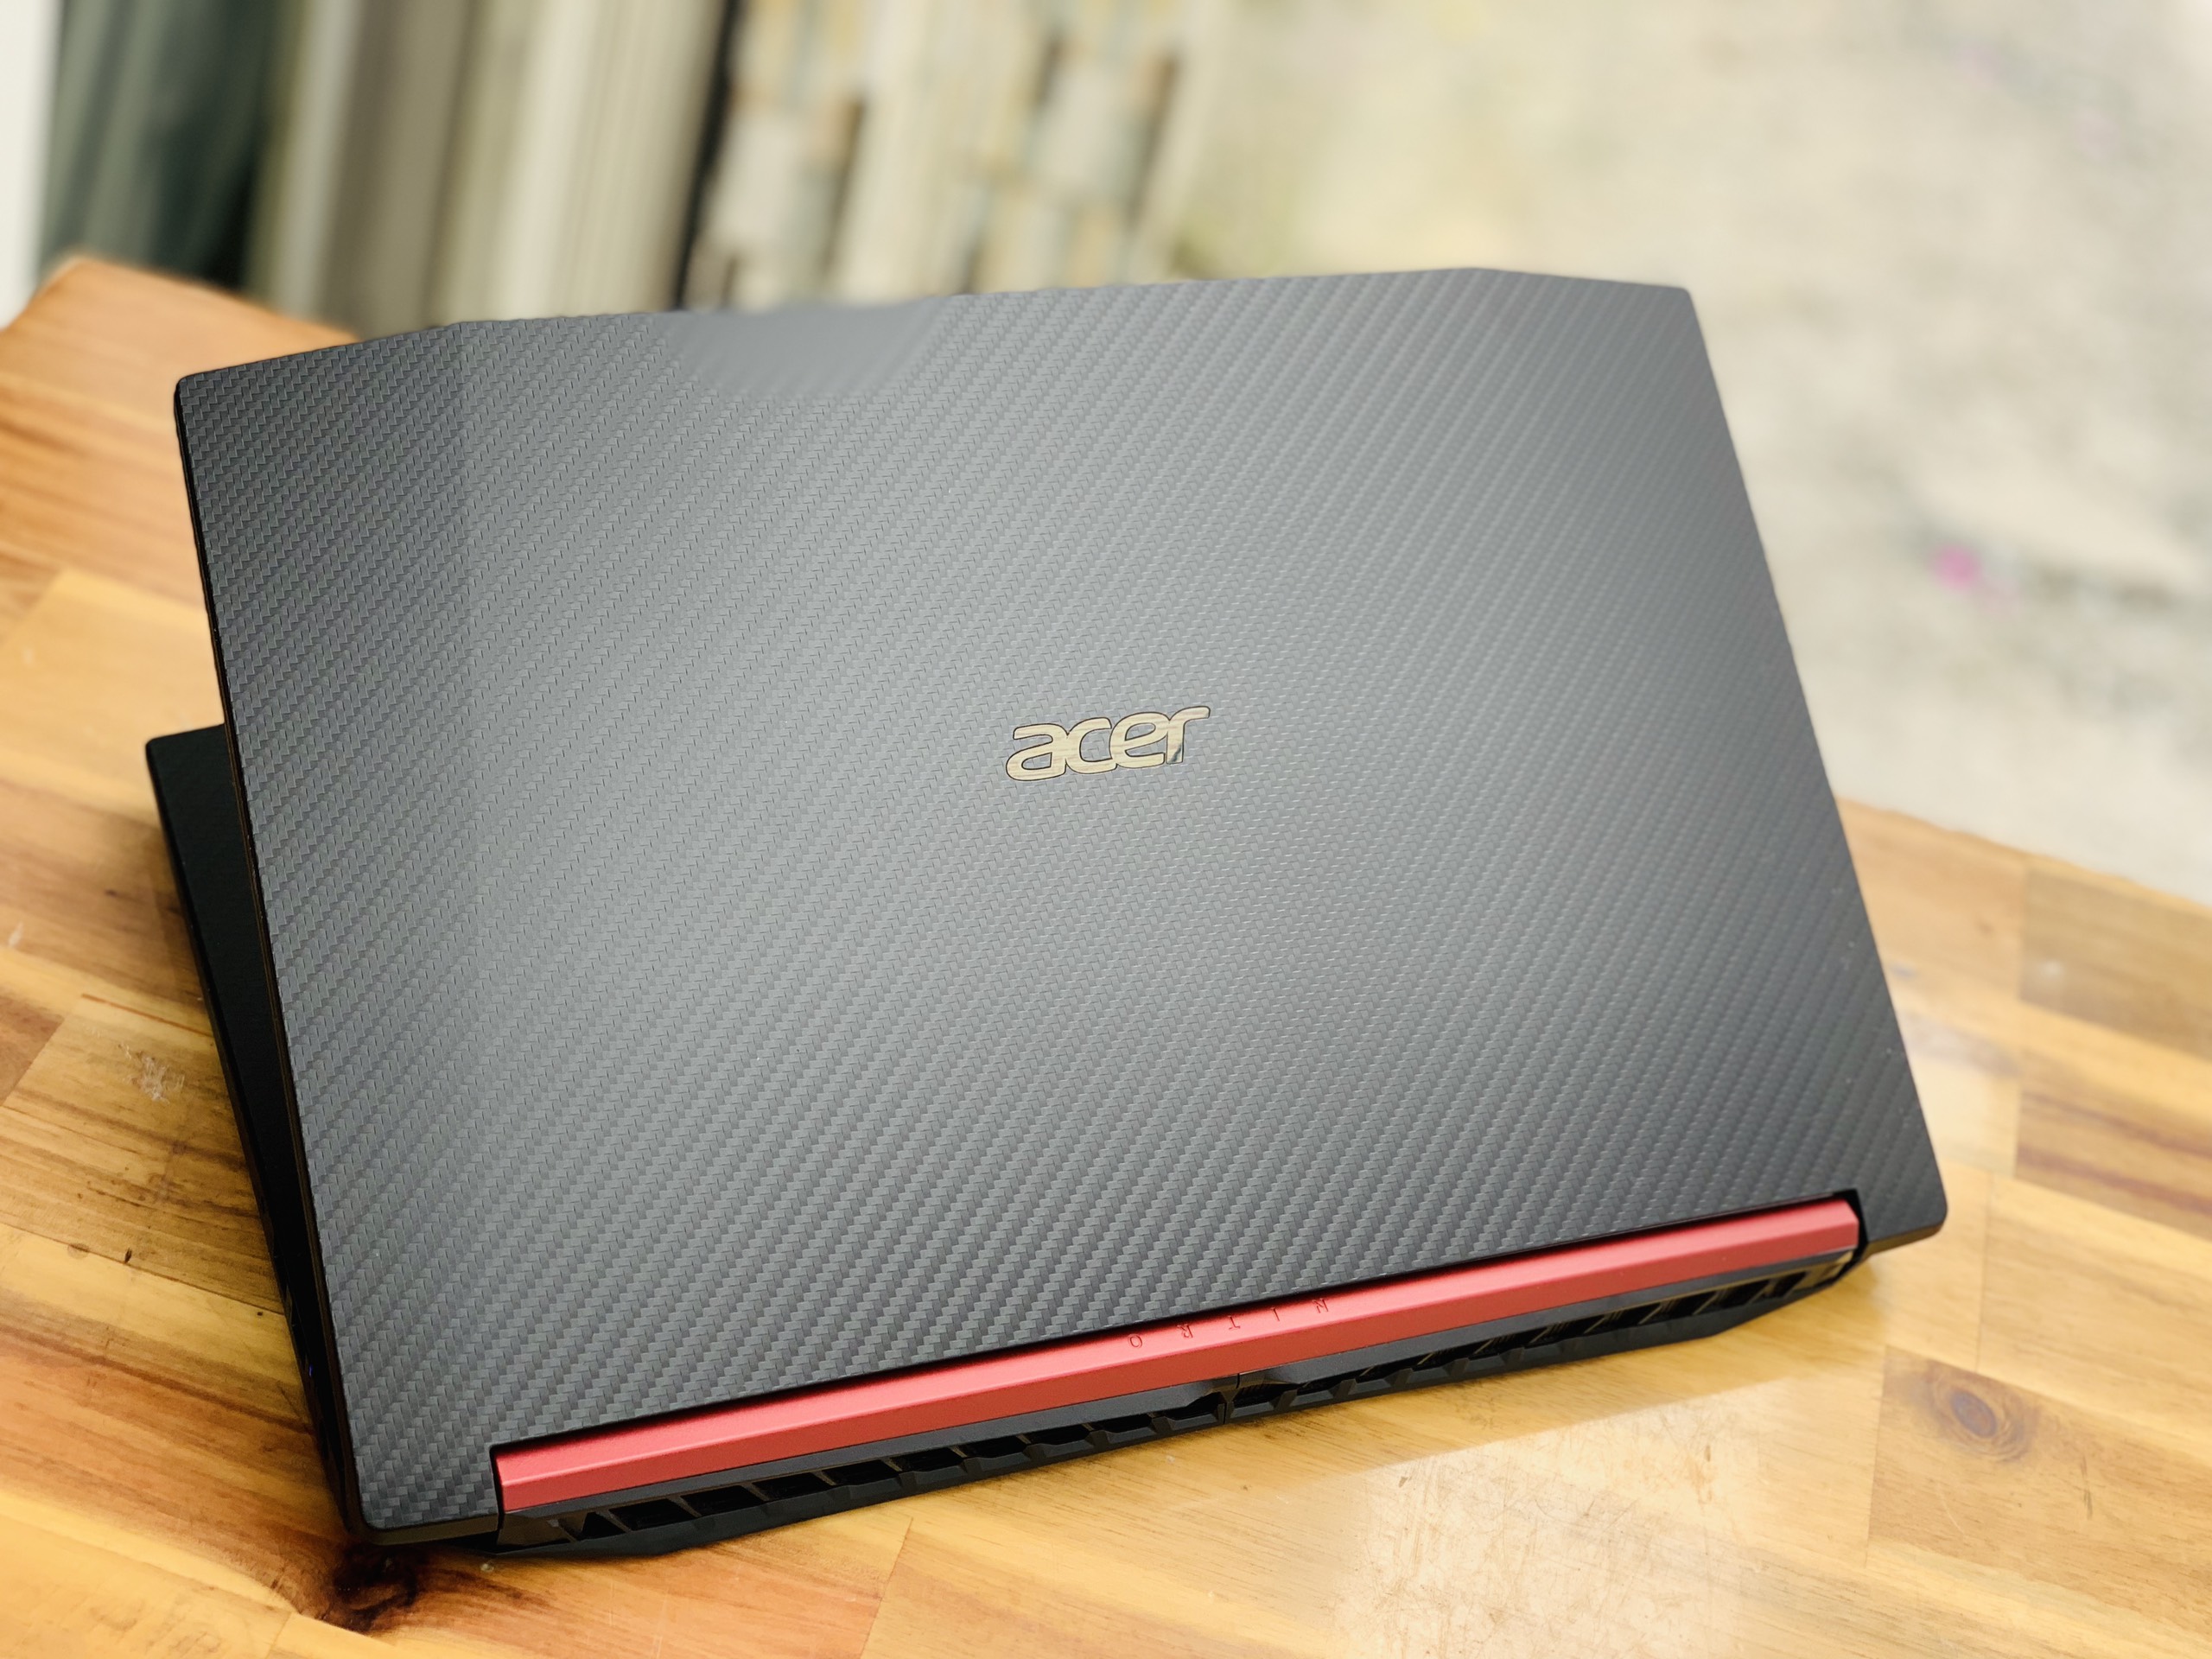 Laptop Gaming Acer Nitro 5 AN515-52, i7 8750HQ 8G SSD128+1000G Vga GTX1050TI 4G Full HD Đèn phím Giá rẻ1